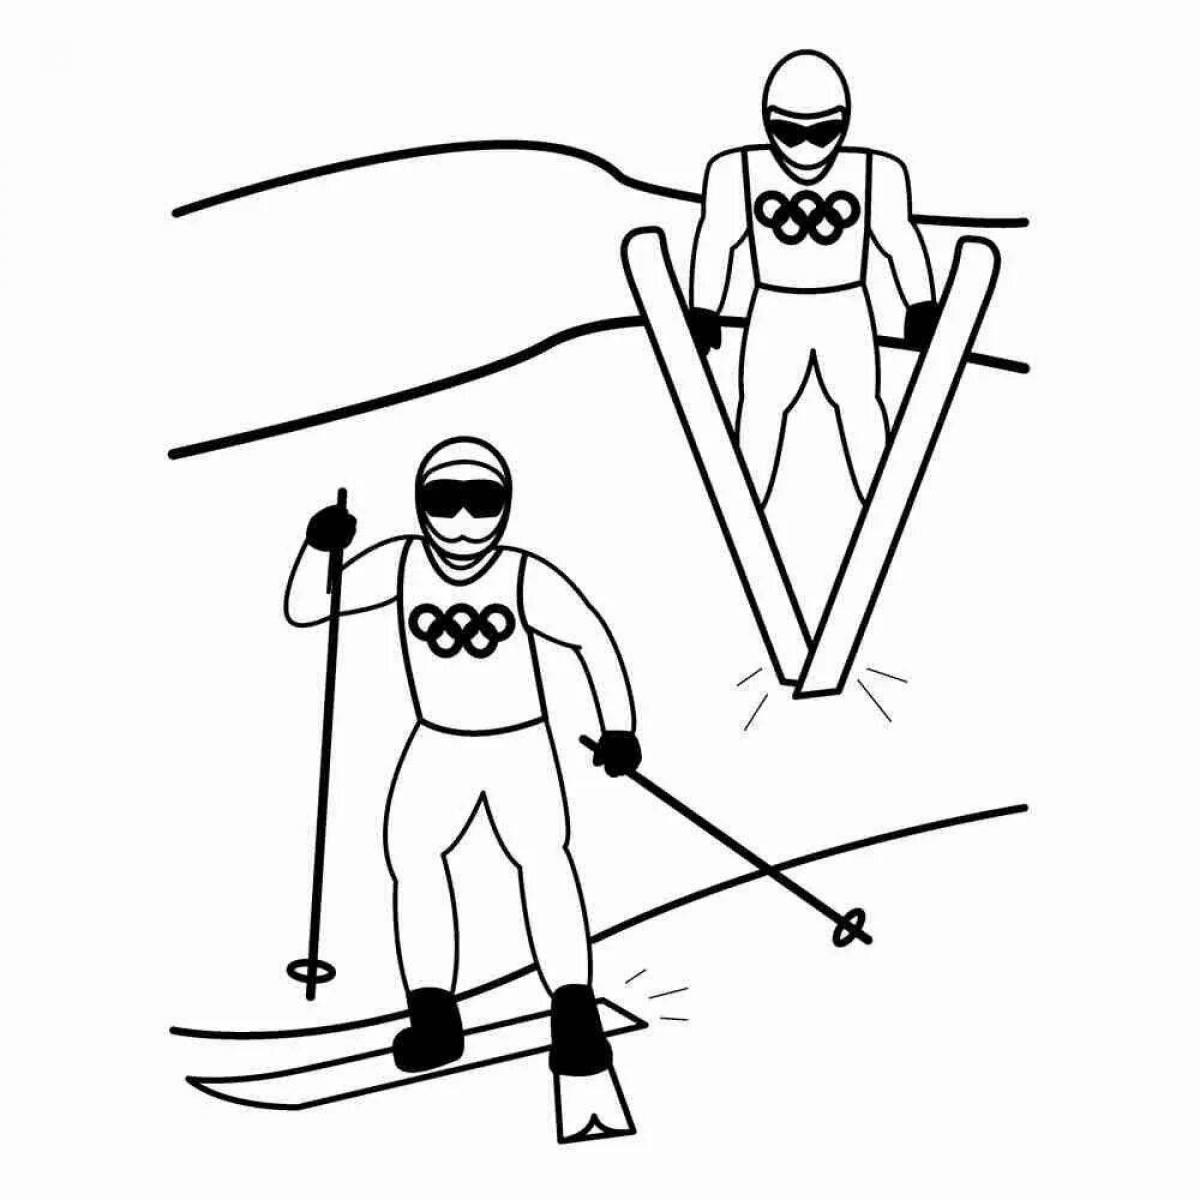 Coloring creative ski jumping